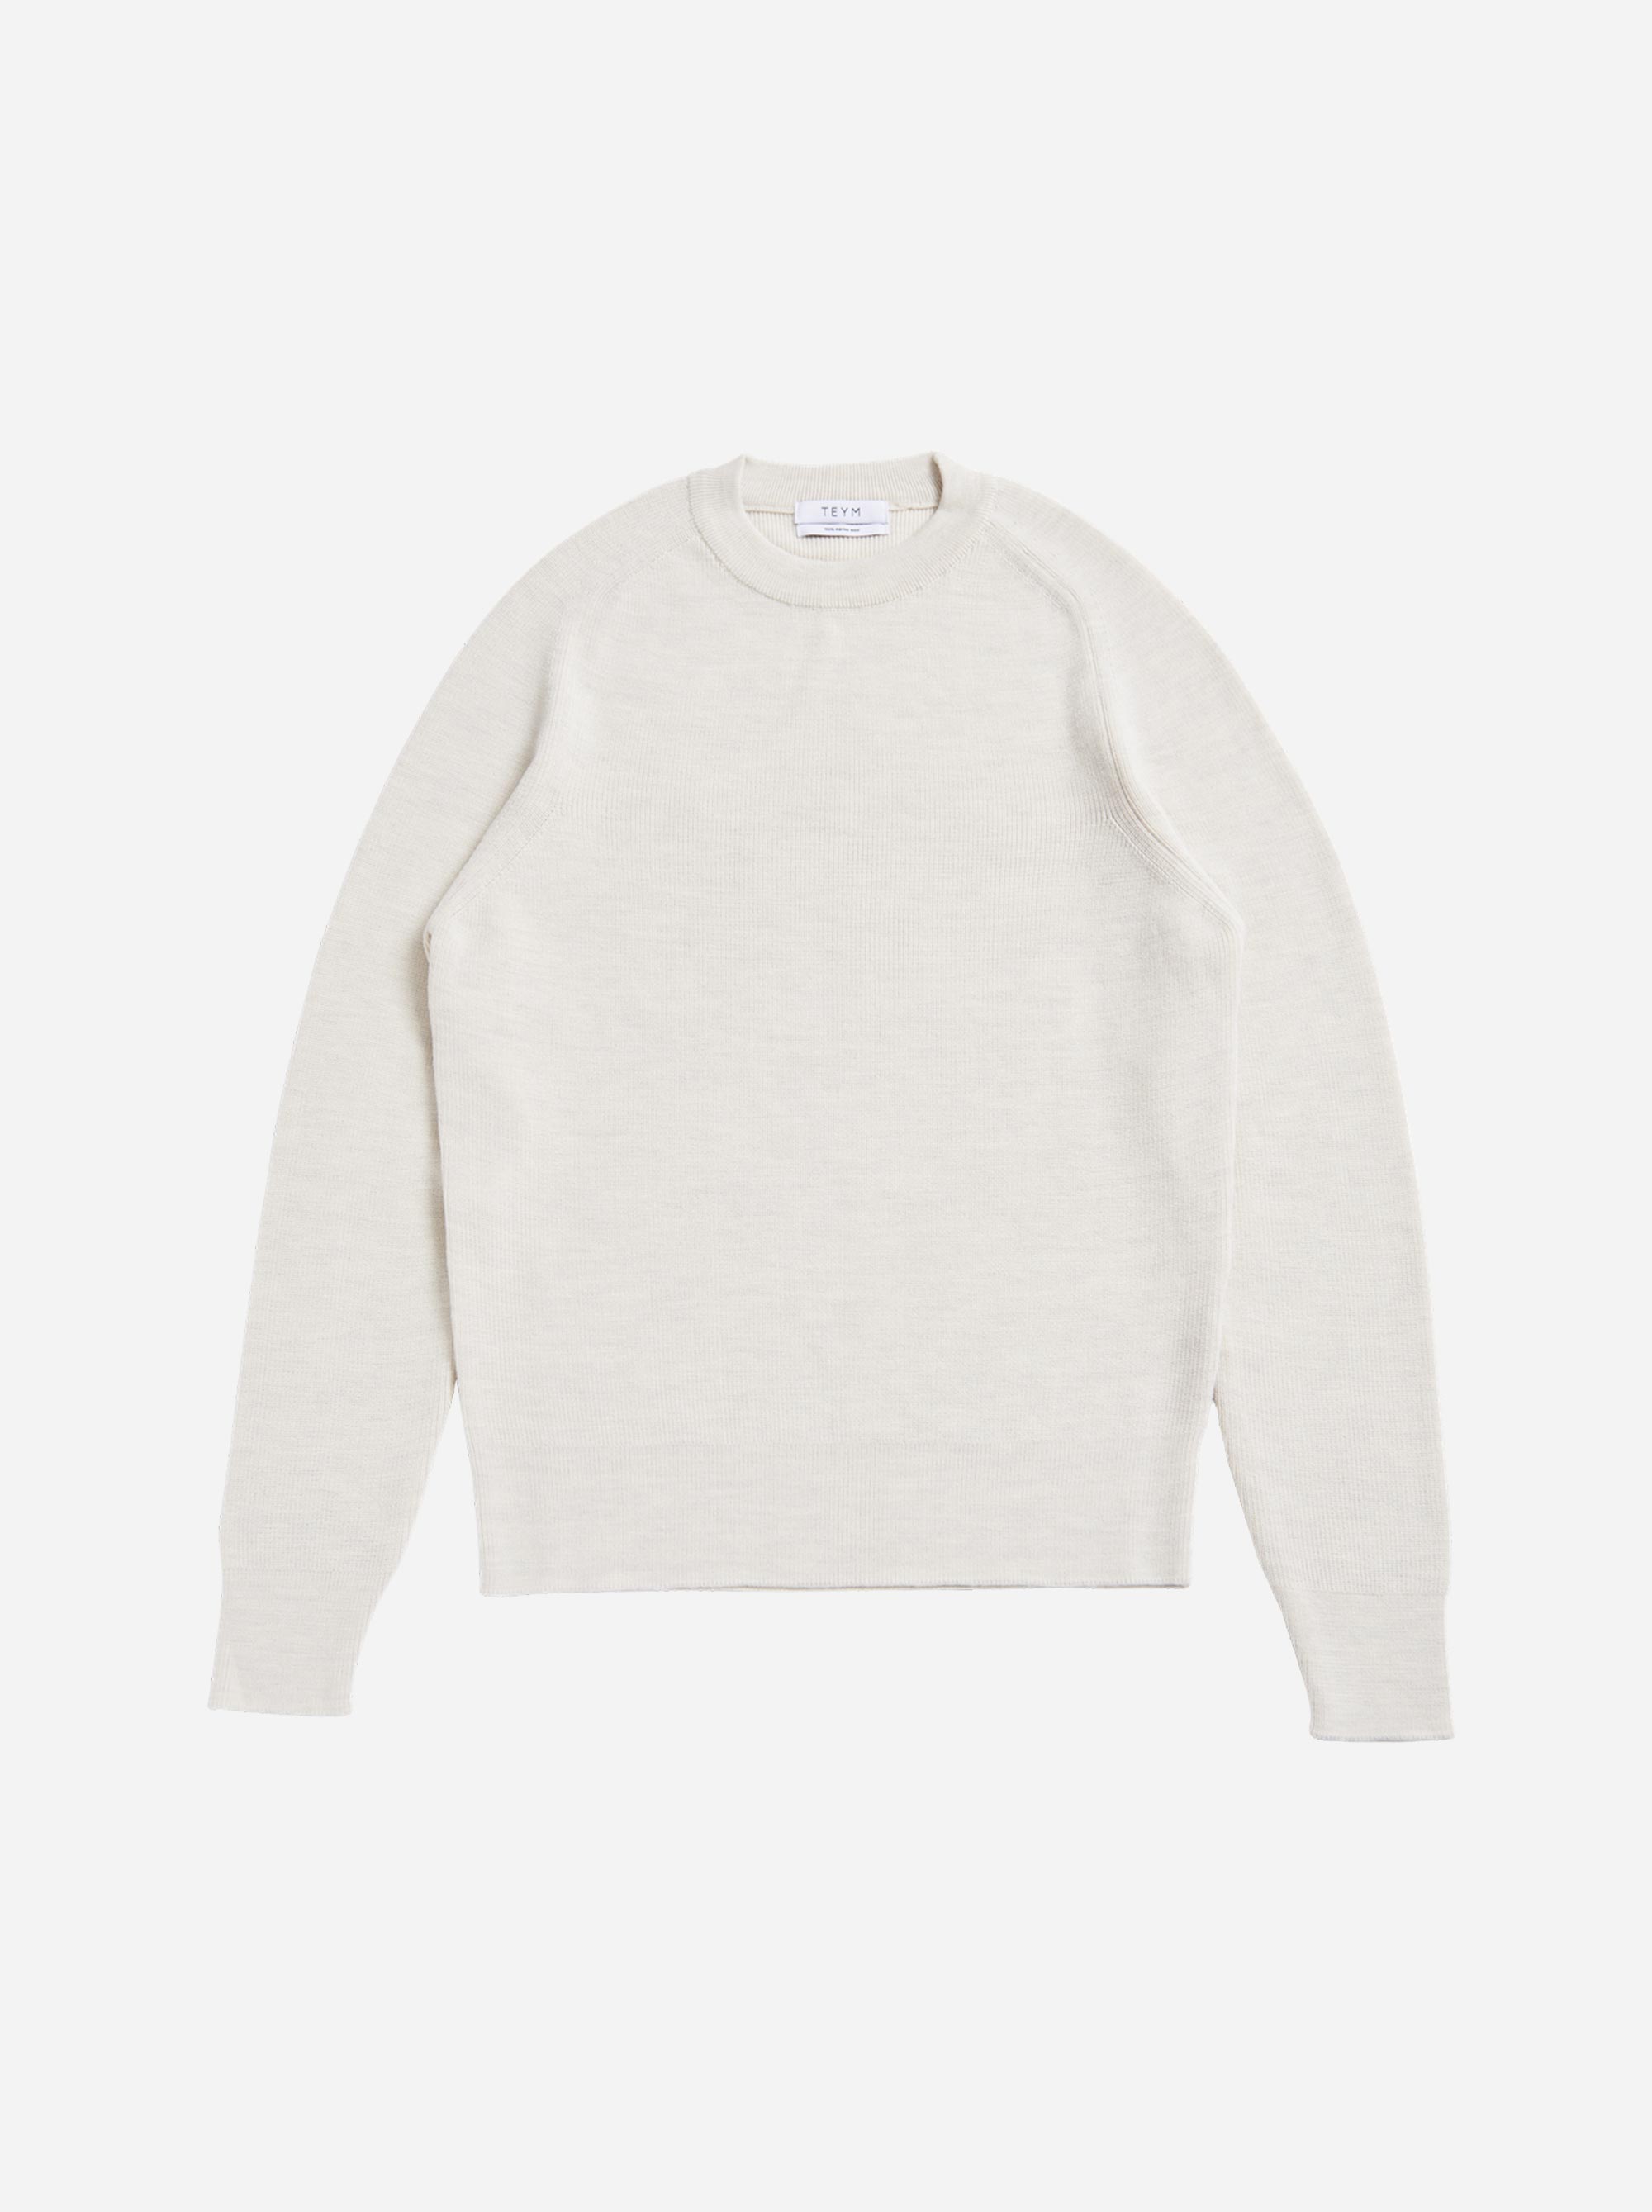 Teym - The Merino Sweater - Men - White - 5